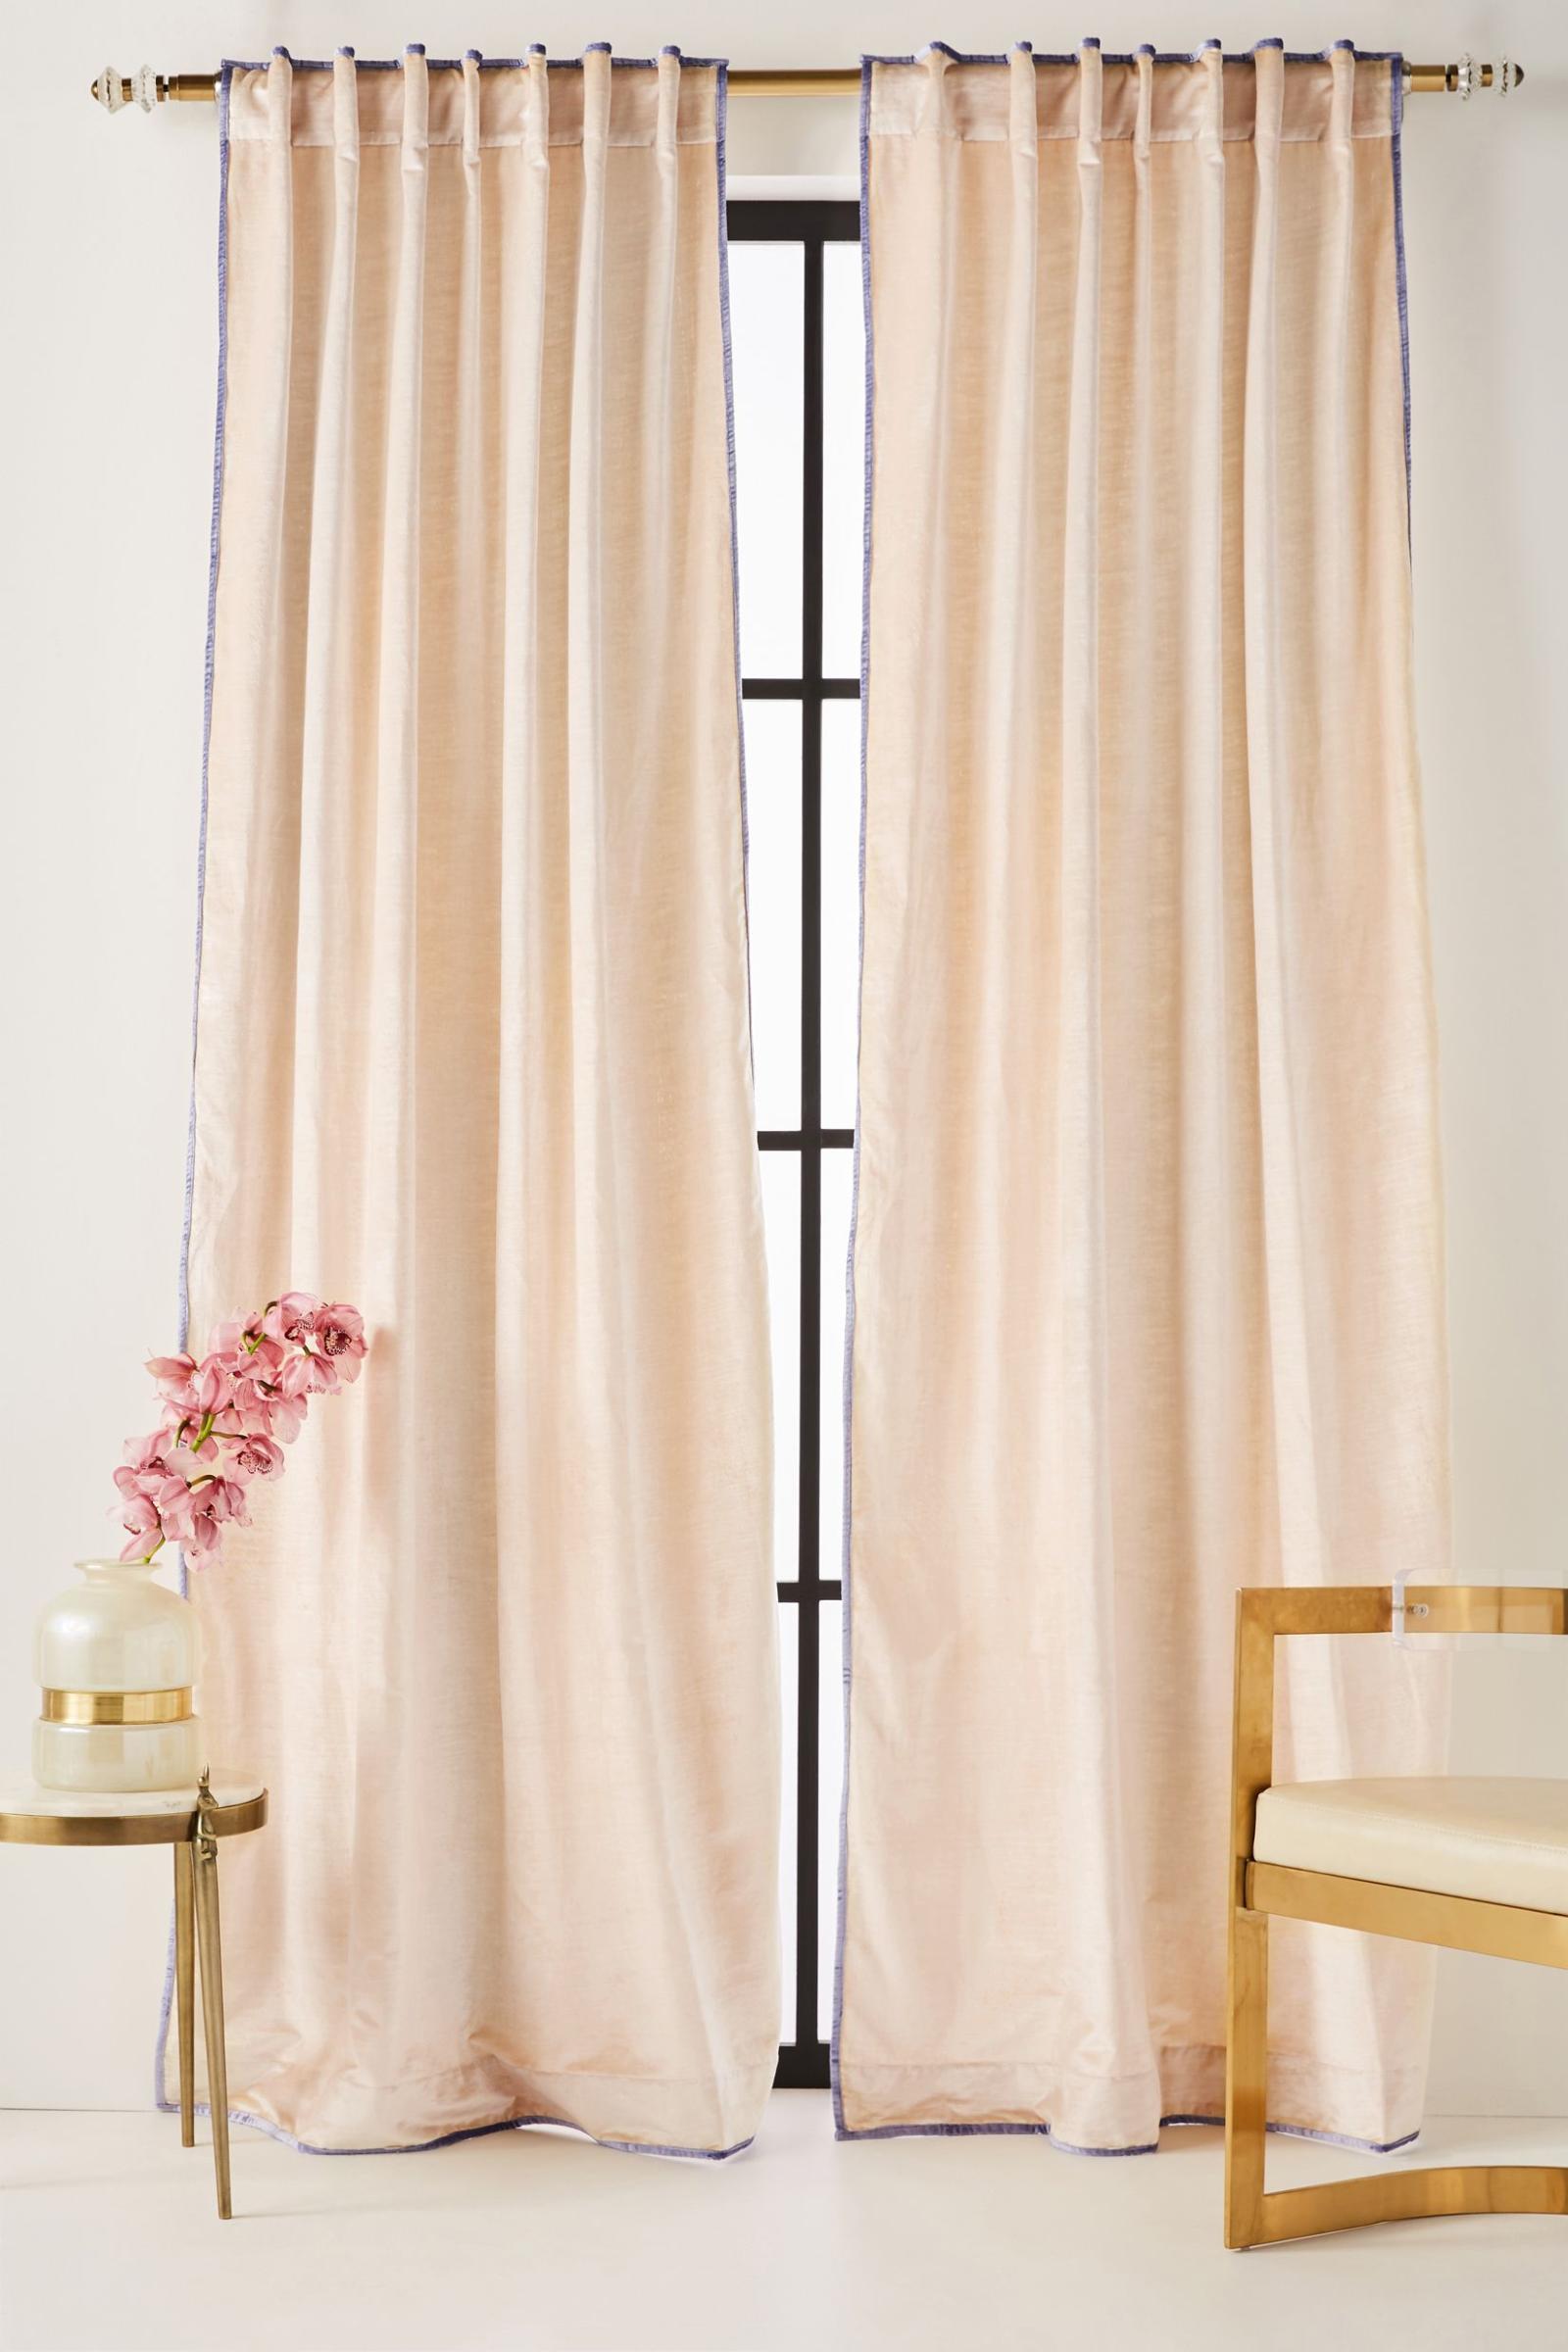 Cùng sử dụng chất liệu vải nhung nhưng tấm rèm cửa này là sự kết hợp của hai màu sắc, màu hồng pastel chủ đạo và đường viền màu tím mộng mơ.